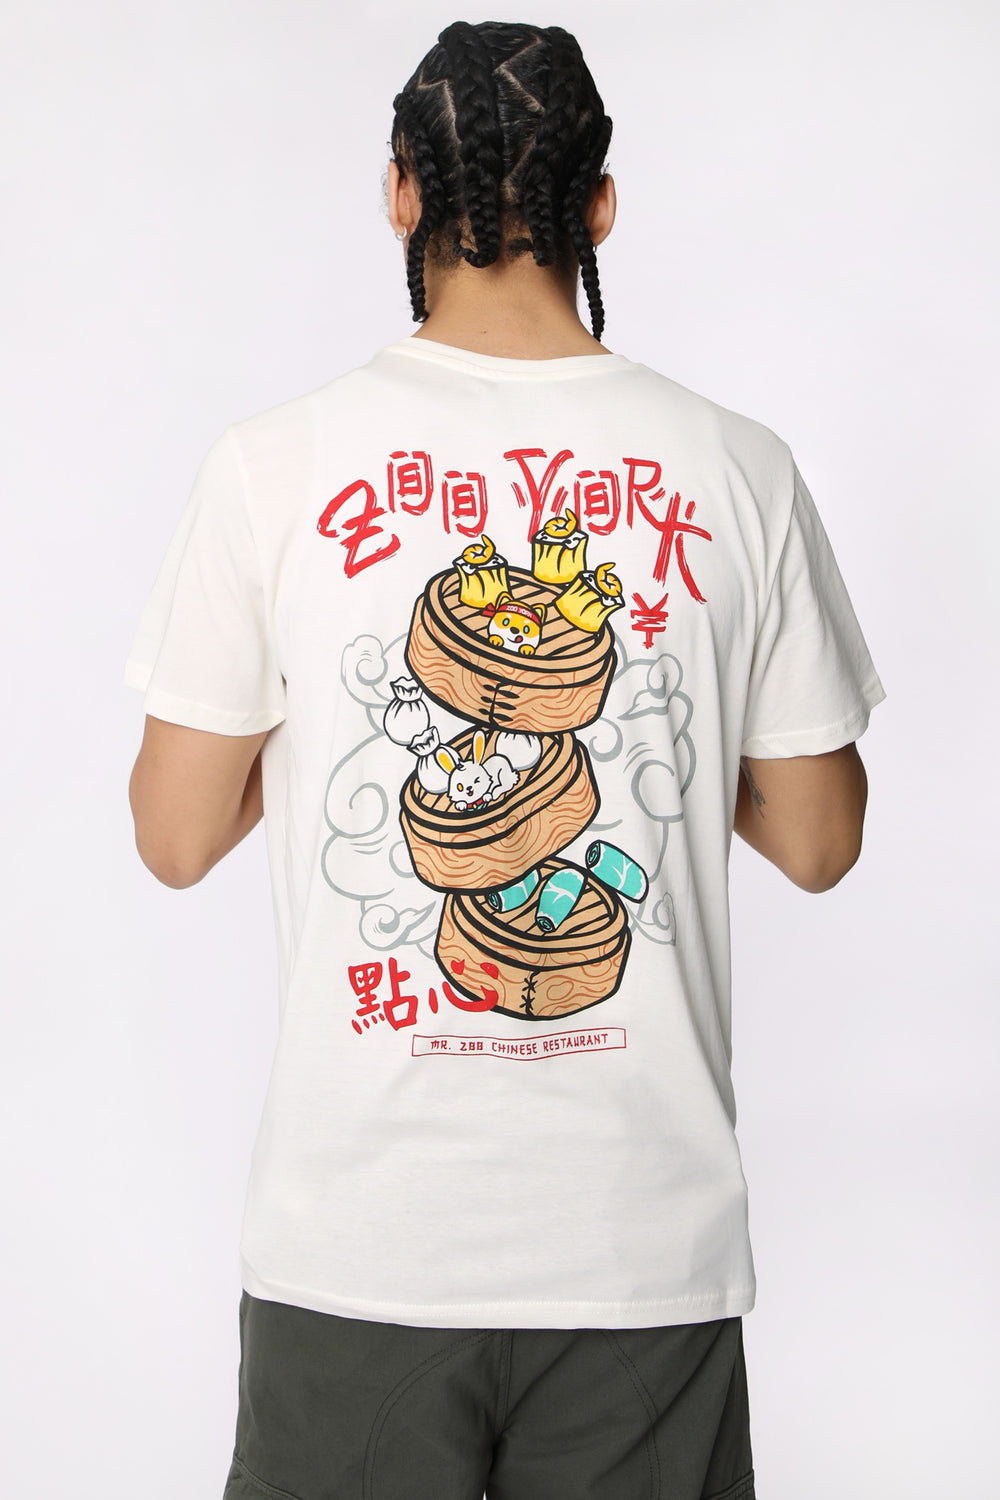 T-Shirt Imprimé Dim Sum Zoo York Homme T-Shirt Imprimé Dim Sum Zoo York Homme